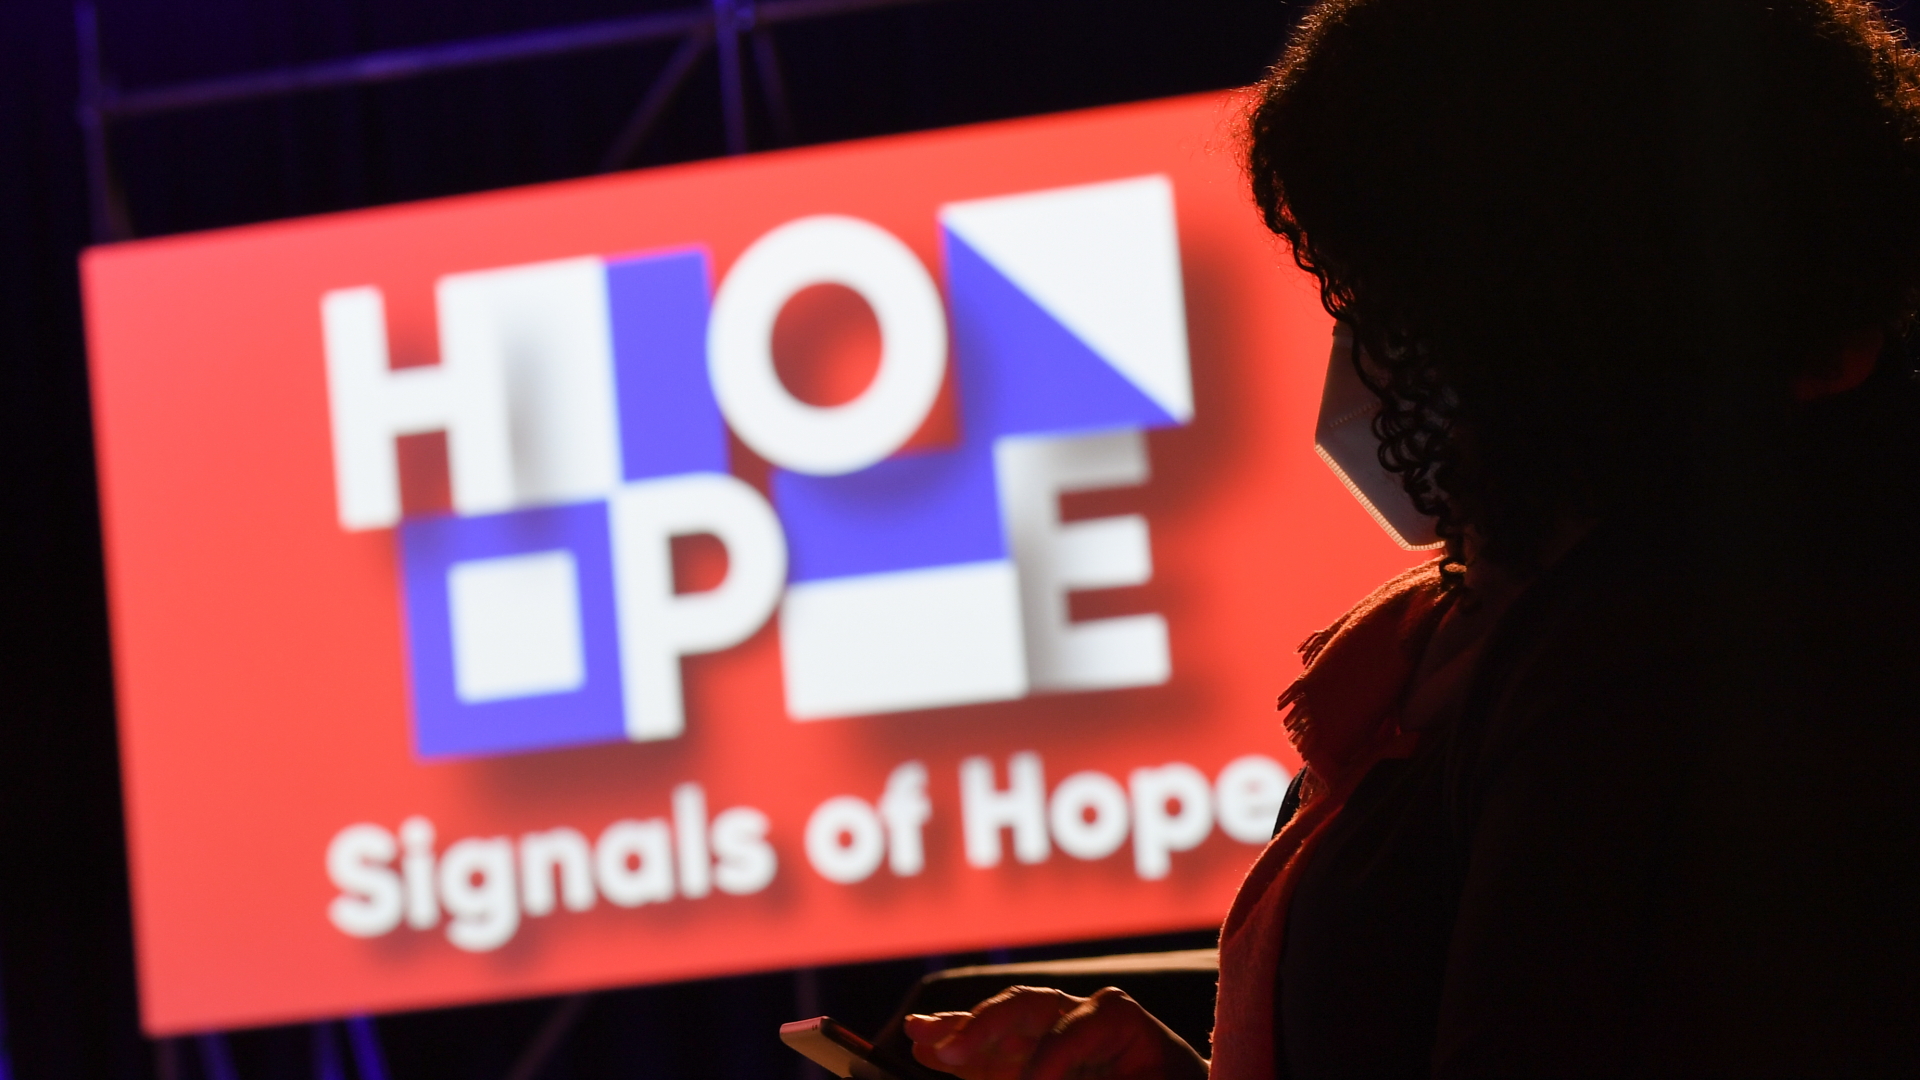 Das Motto der Frankfurter Buchmesse 2020, "Signals of Hope" | dpa